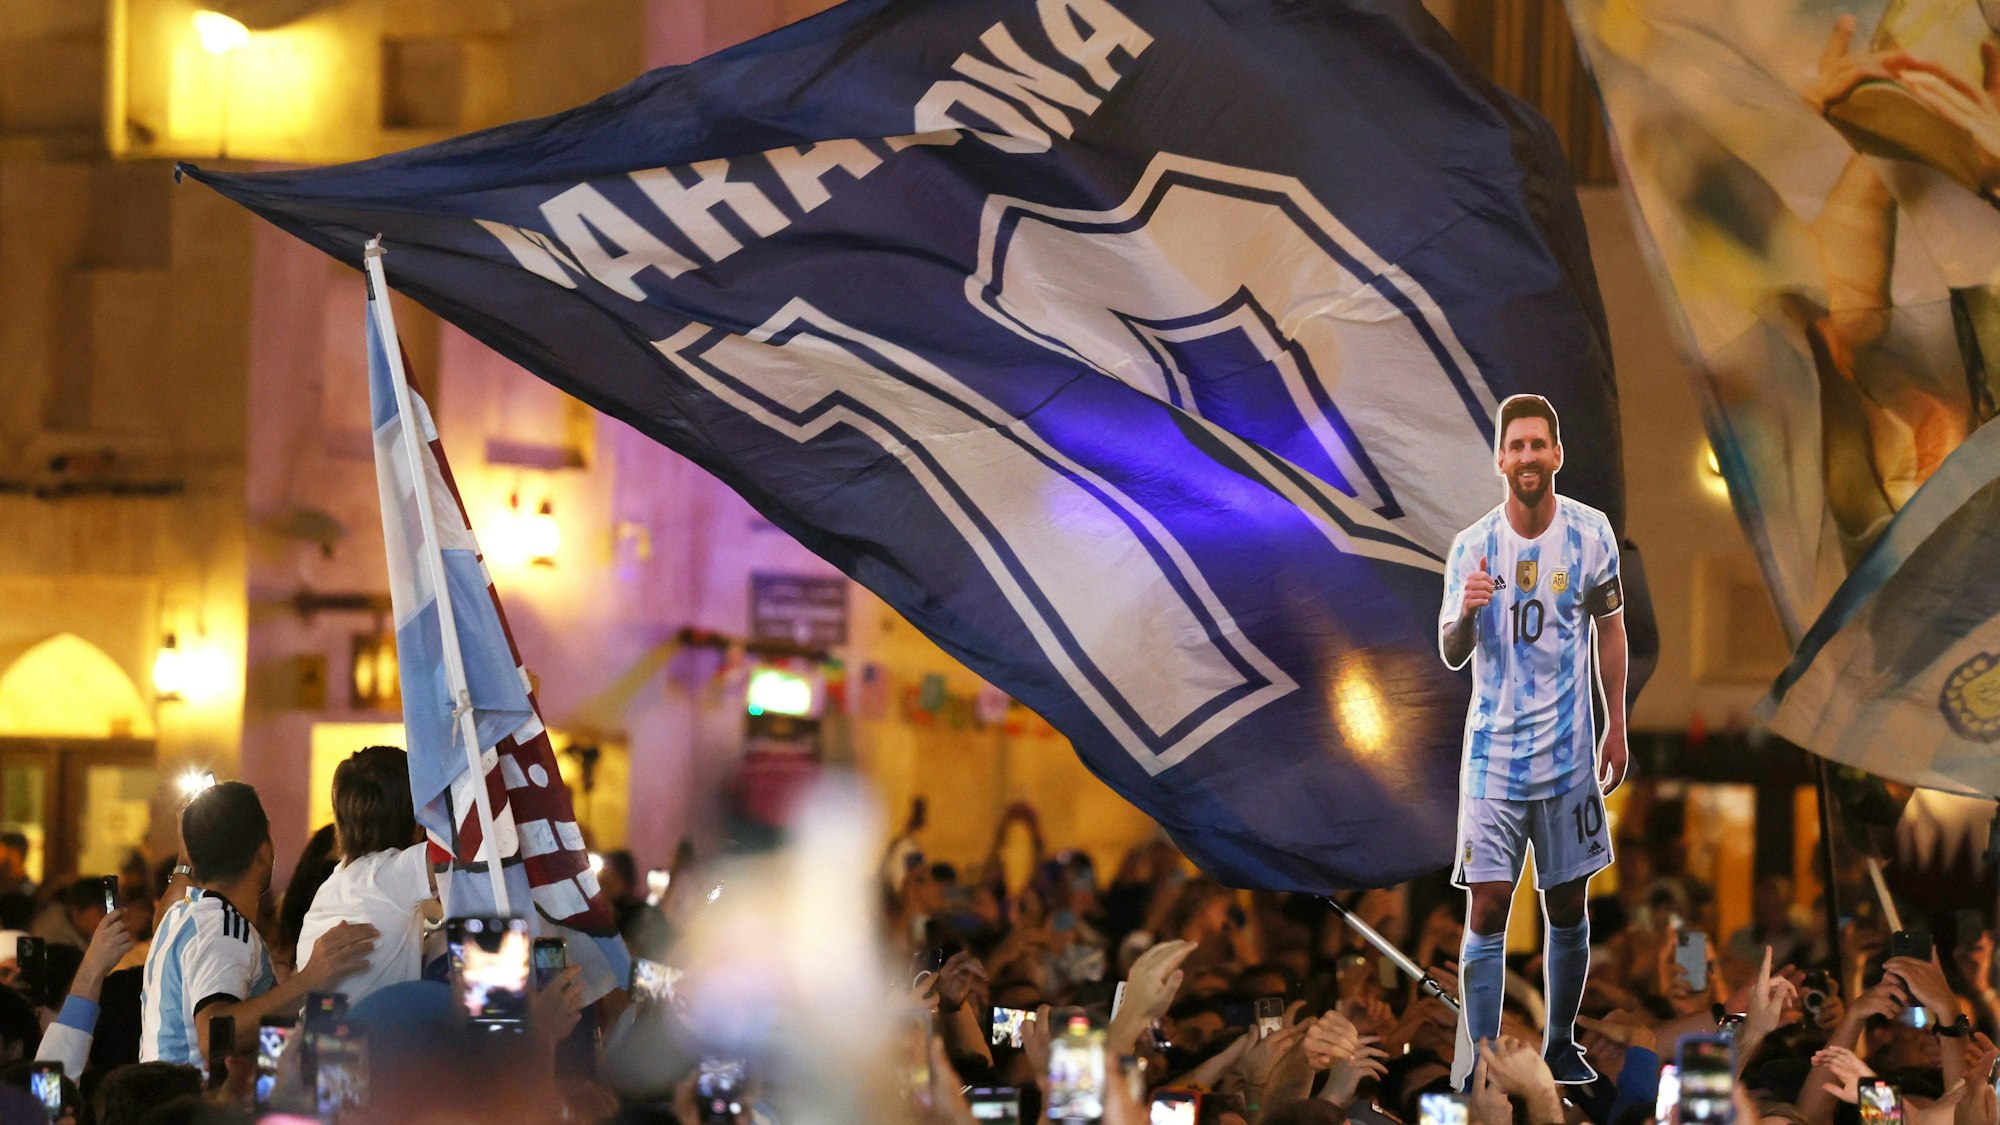 Fans der argentinischen Nationalmannschaft haben sich am Souk Waqif in Doha versammelt. Eine riesige Maradona-Flagge mit der Zehn des Superstars weht, davor ist eine Pappfigur des aktuellen Kapitäns der Argentinier zu sehen, Lionel Messi.